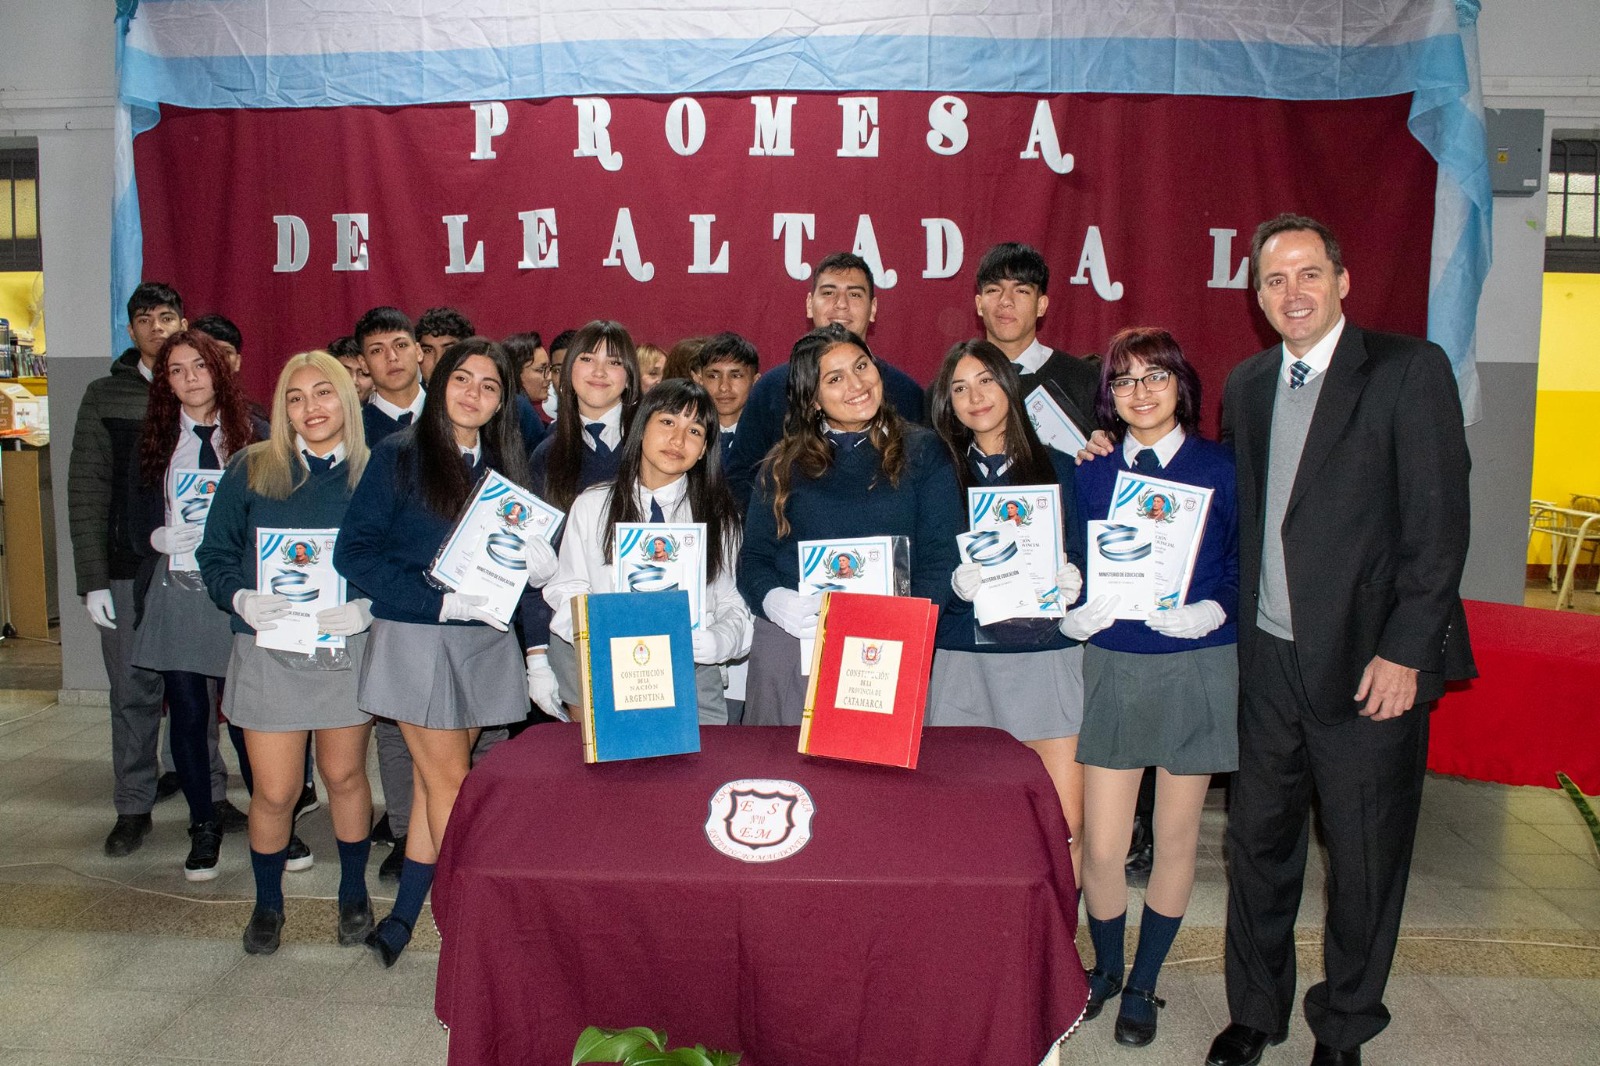 Alumnos de primaria y de secundaria prometieron lealtad a la Constitución Nacional y Provincial